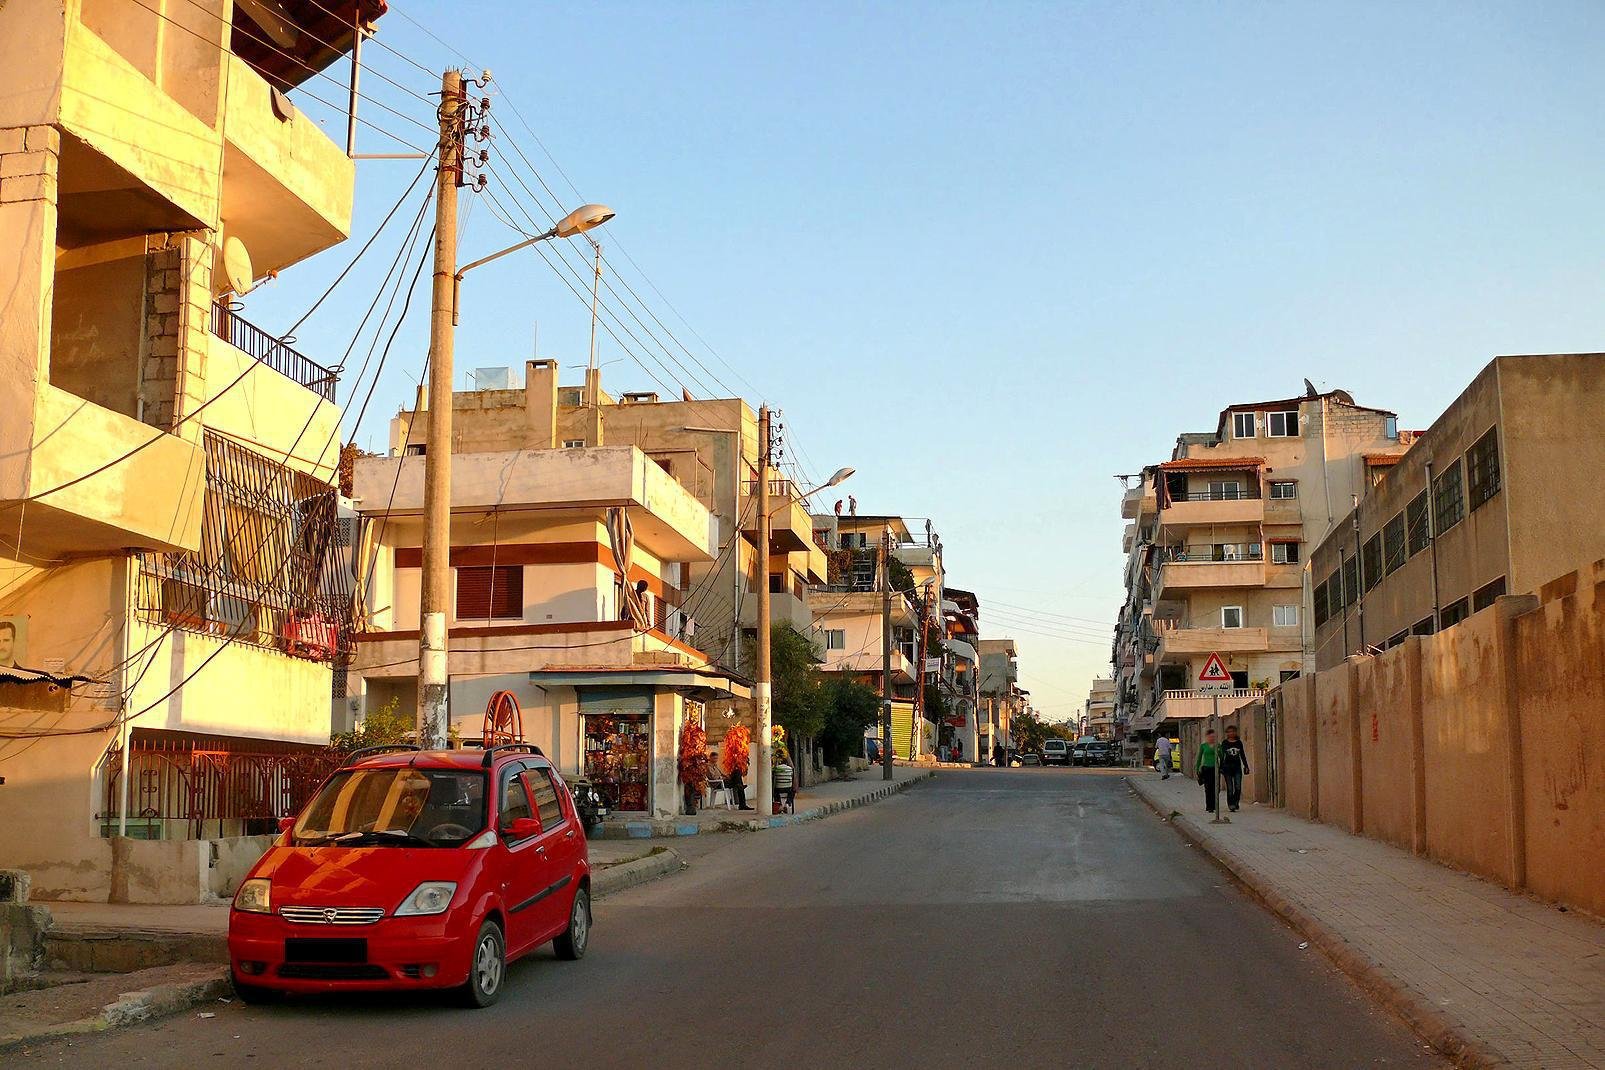 Latakia, die drittgrte Stadt Syriens, ist dank ihres florierenden Hafens eine weltoffene Stadt mit westlichem Ambiente. Der gesamte Handelsverkehr des Landes wird ber diese Stadt abgewickelt. Durch den intensiven Kontakt mit der Auenwelt, den hohen Anteil an Christen und einen gemigt praktizierten Islam zhlt Latakia zu den weniger konservativen Stdten des Landes. Alkohol ist hier zum Beispiel ...